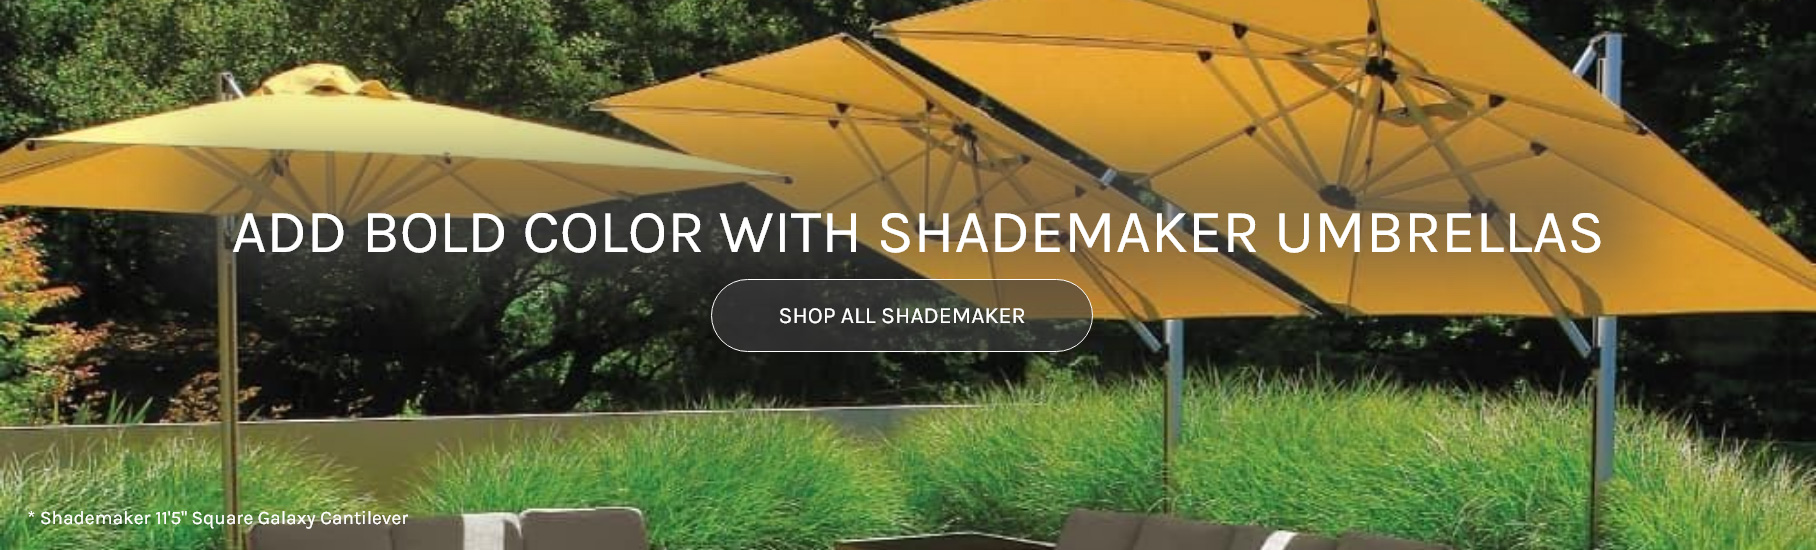 Shop All Shademaker